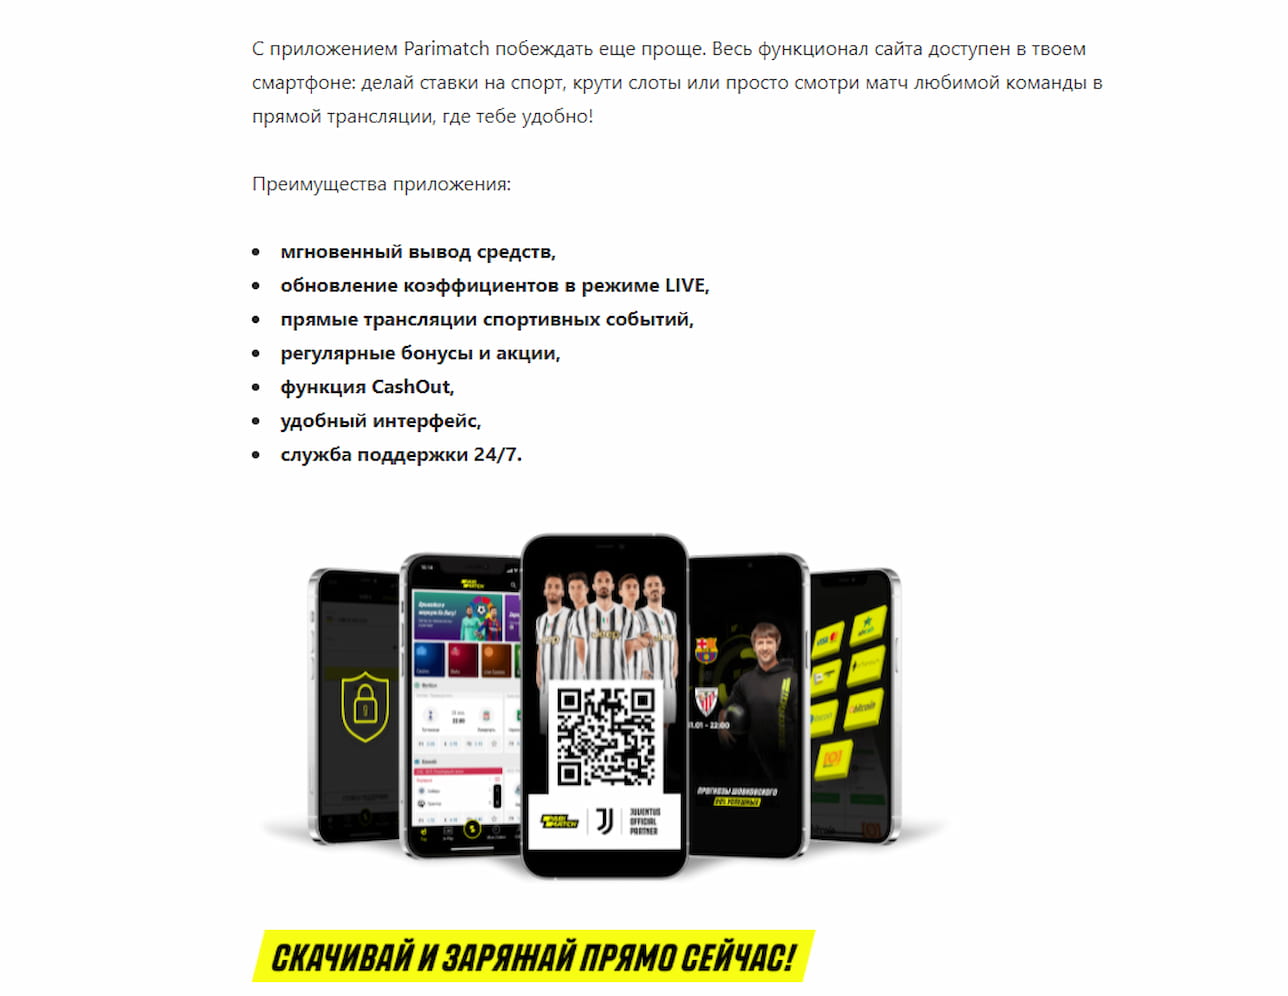 Текст о Париматч мобильных опциях и баннер мобильного приложения с QR кодом для скачивания